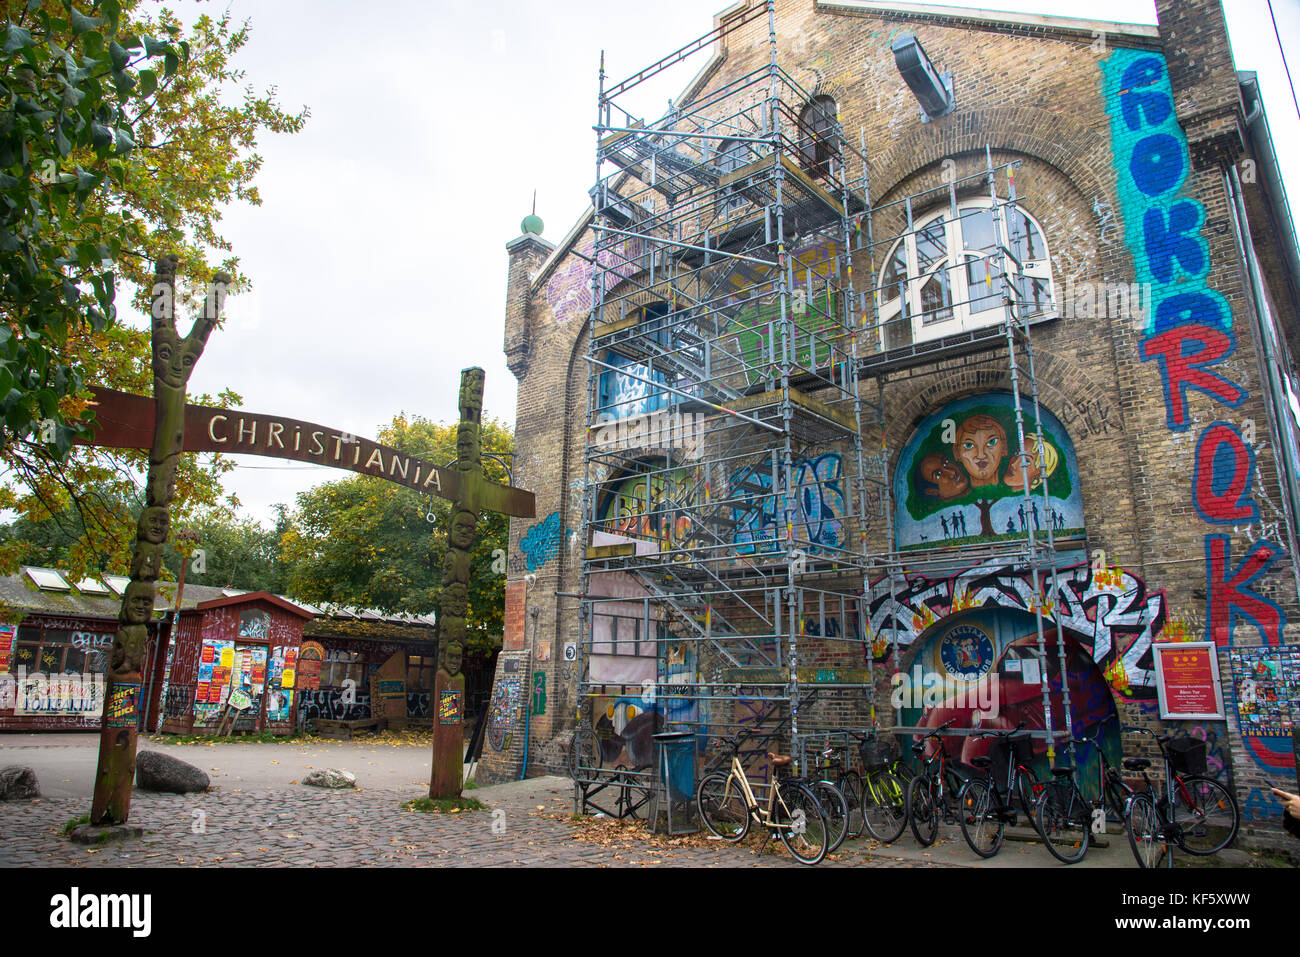 entrance of freestate Christiania in Copenhagen, Denmark Stock Photo